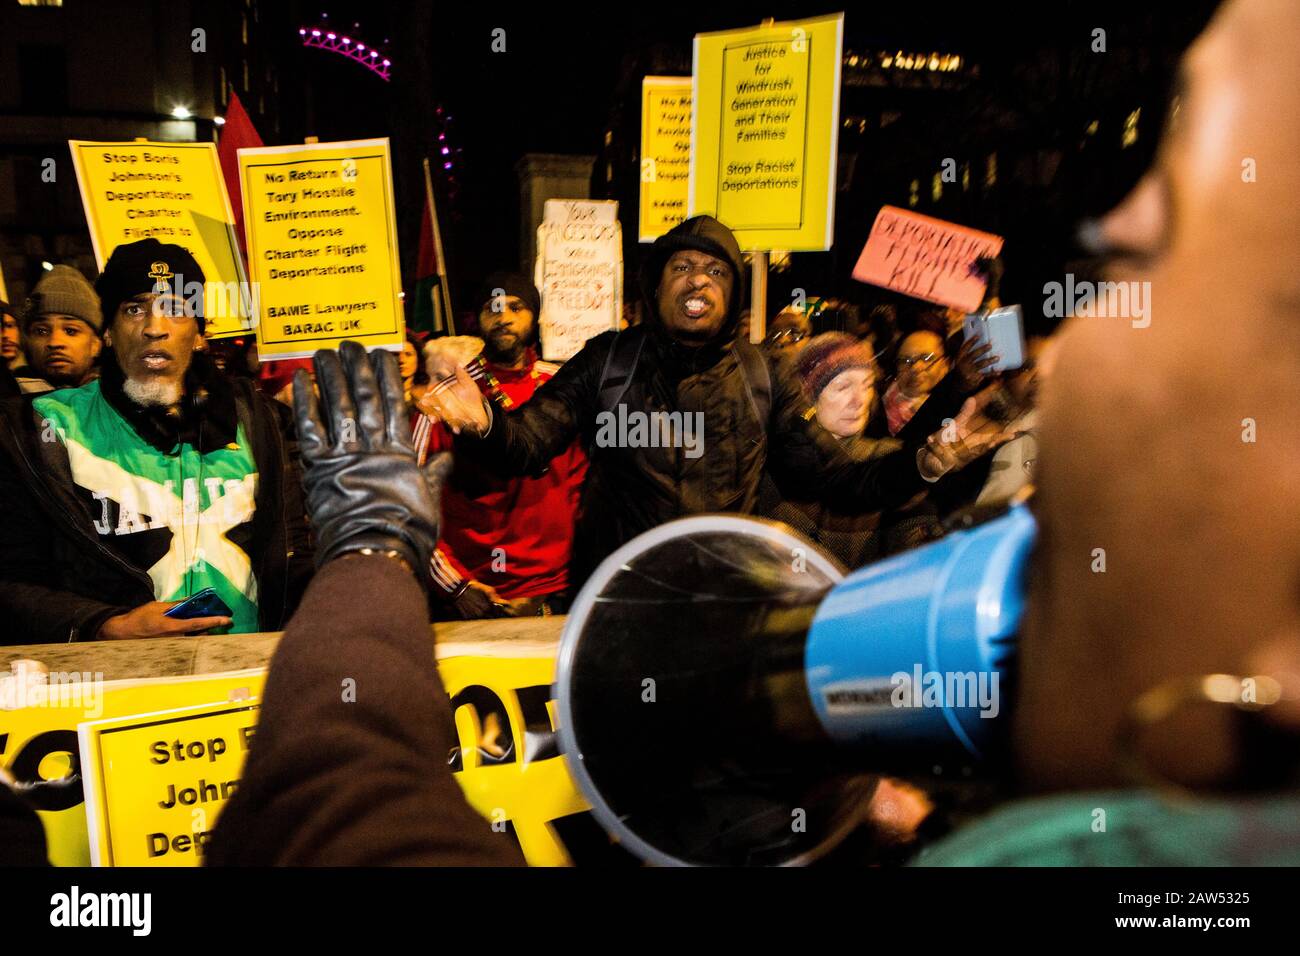 Londres UK 6 février 2020 Les Gens appellent à une action directe lors de la manifestation à Whitehal contre un prochain vol de déménagement prévu pour transporter jusqu'à 50 personnes à la Jamaïque le 11 février. Crédit: Thabo Jaiyesimi/Alay Live News Banque D'Images